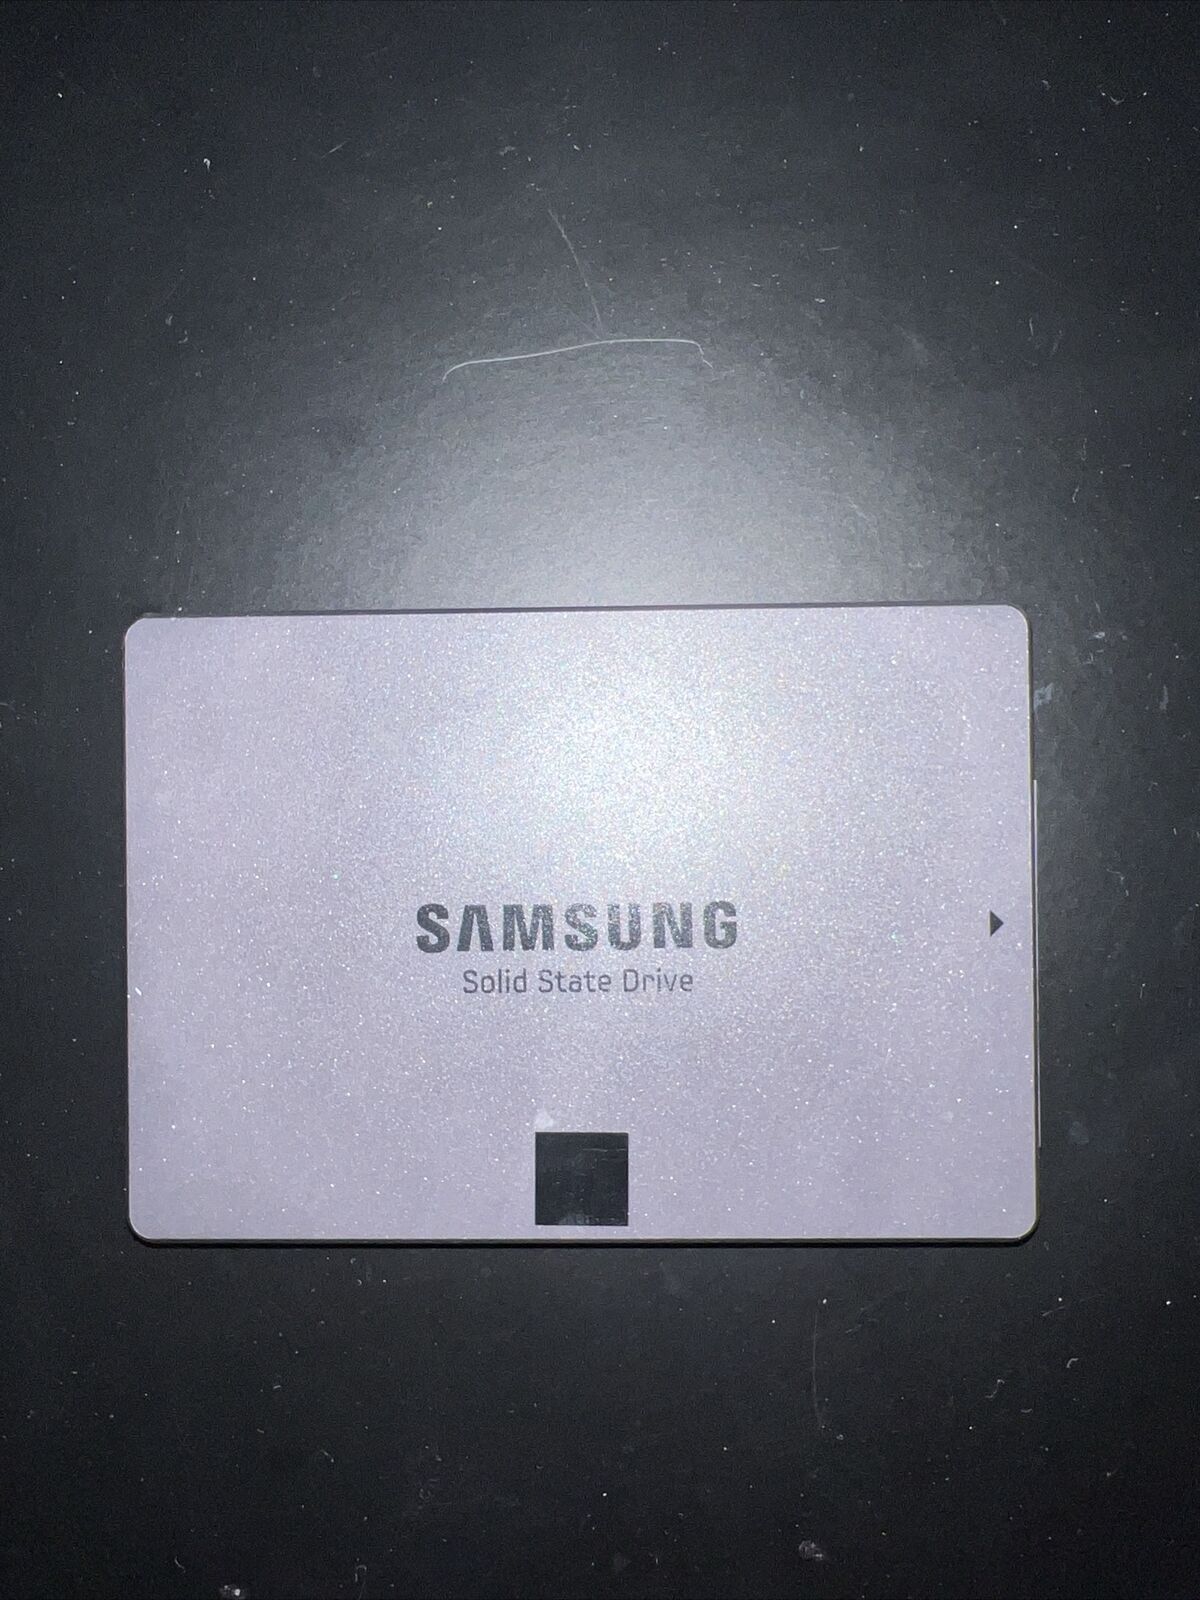 Samsung SSD 850 EVO SATA III 6Gb/s 120GB SSD